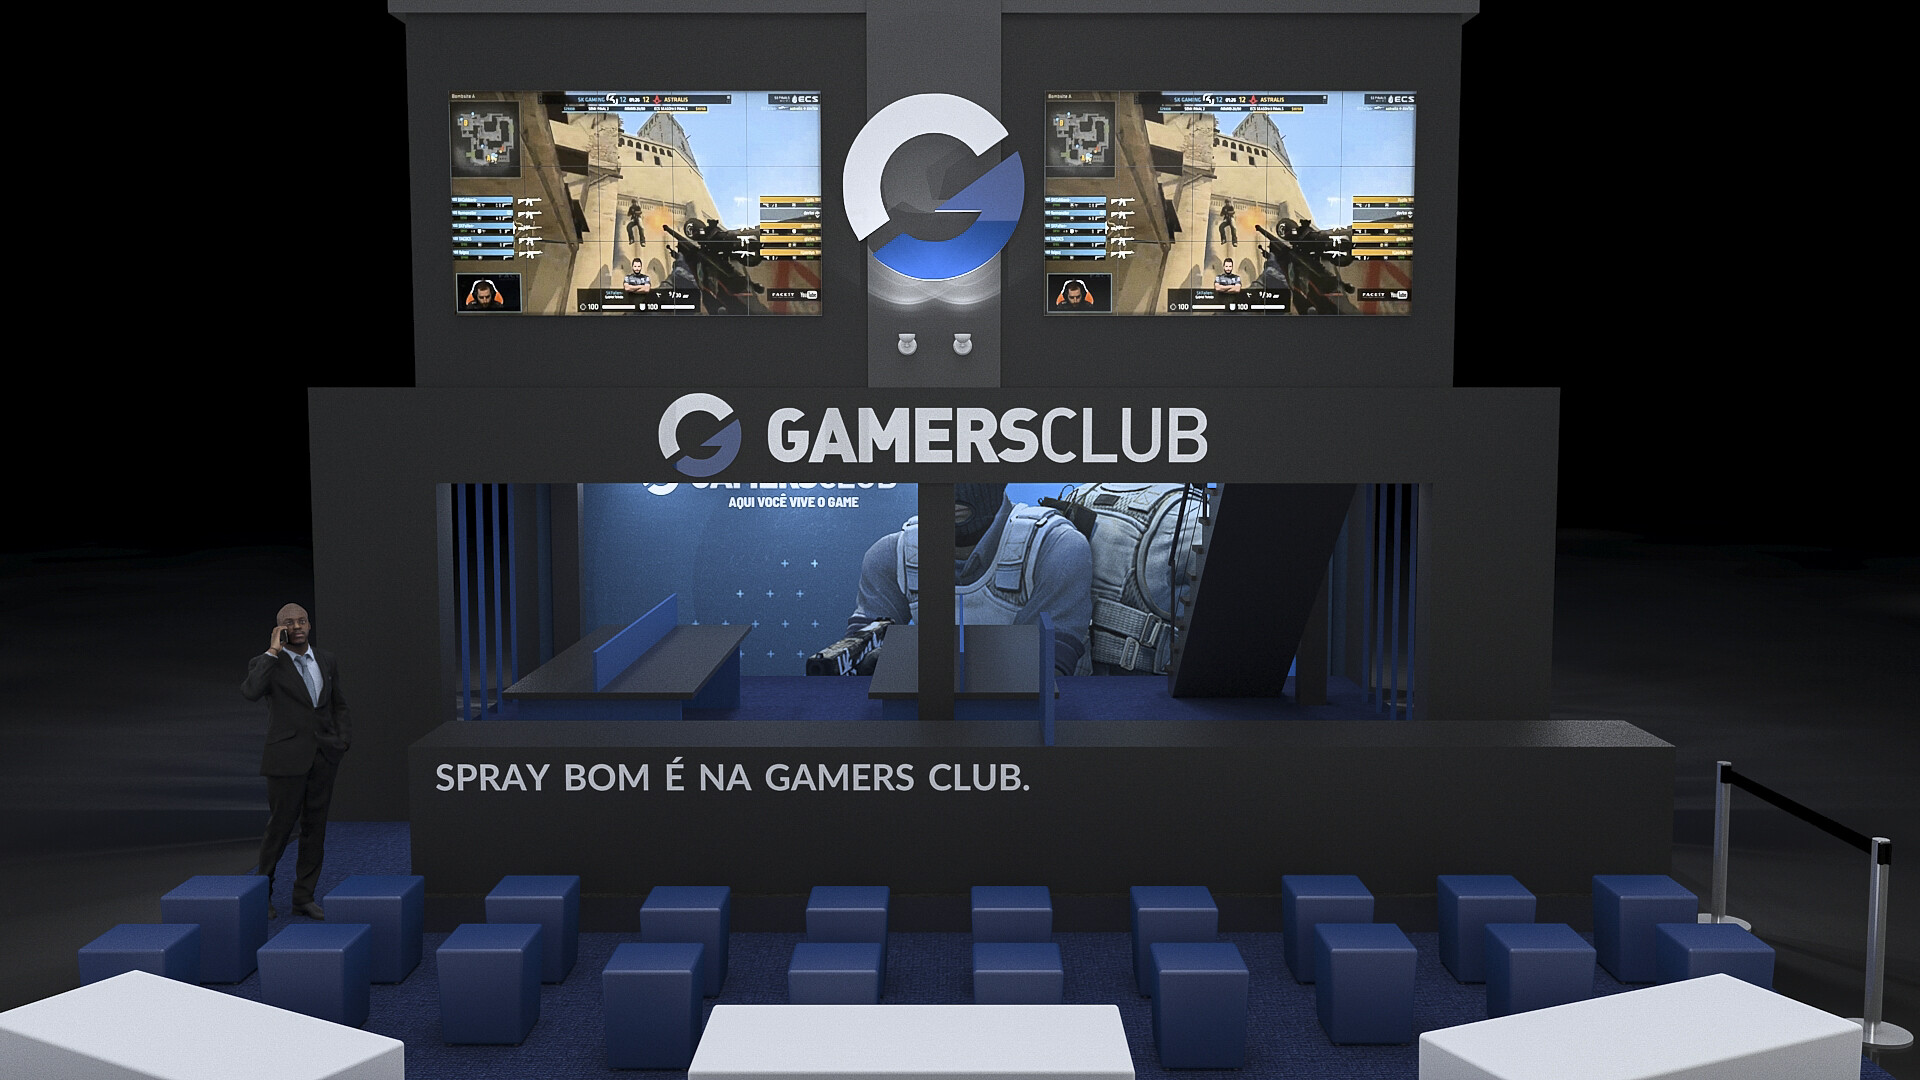 Gamers Club - Aqui você vive o game.